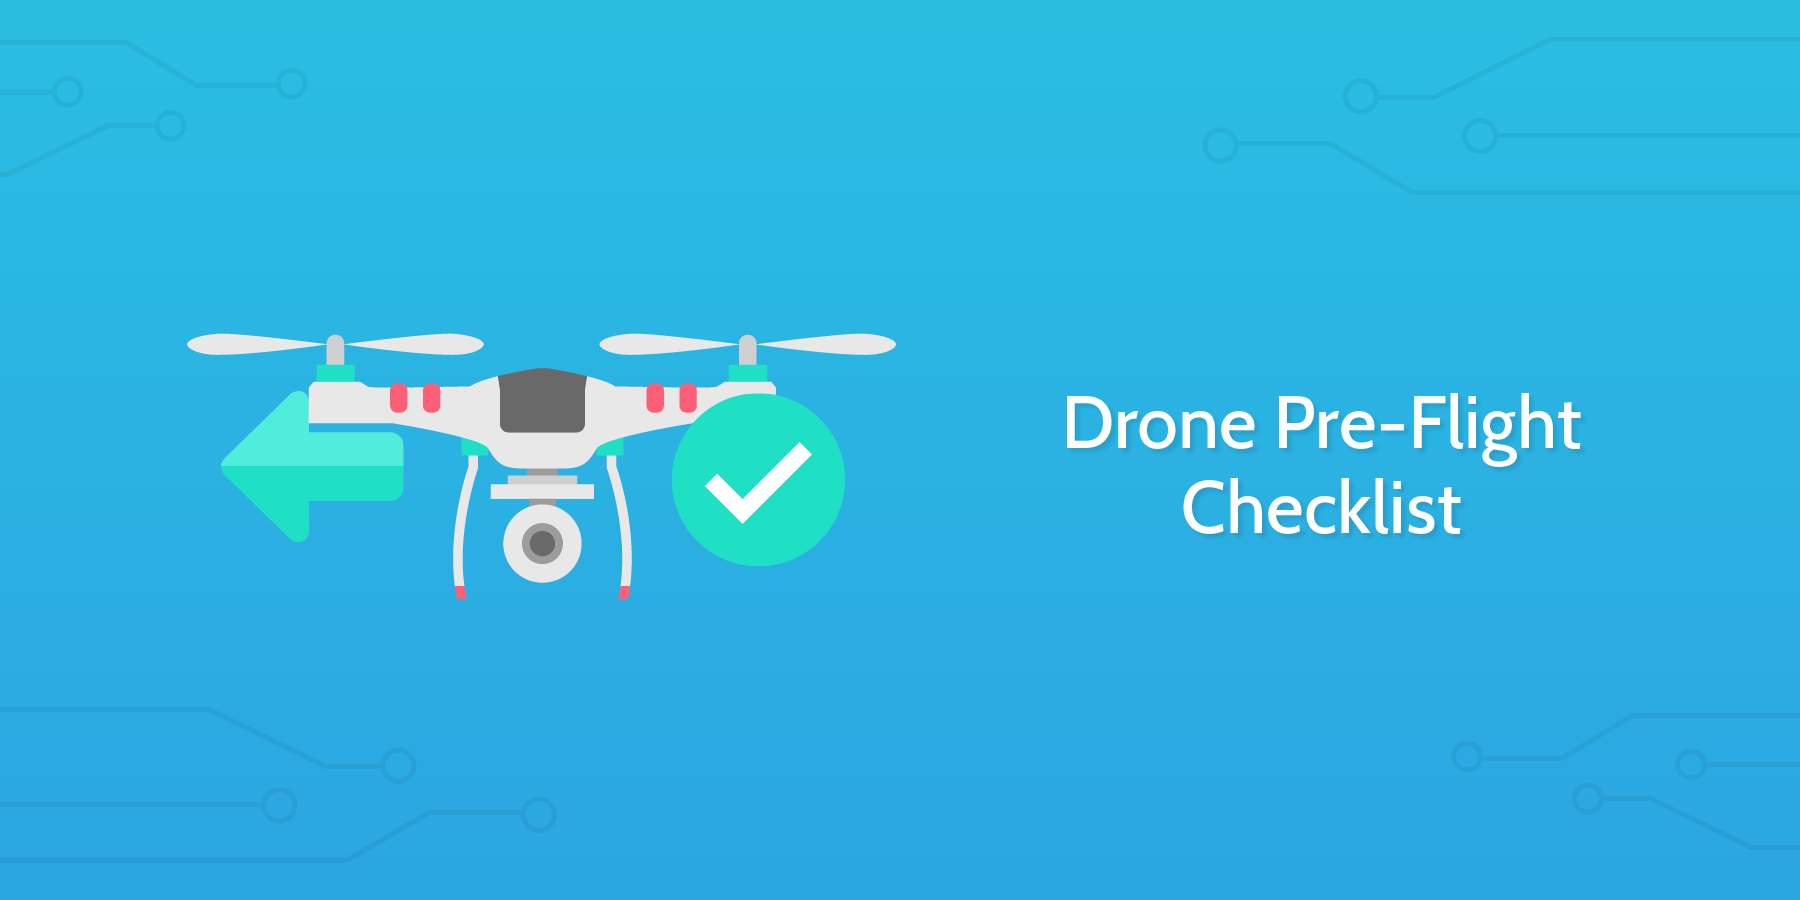 Drone Pre-Flight Checklist